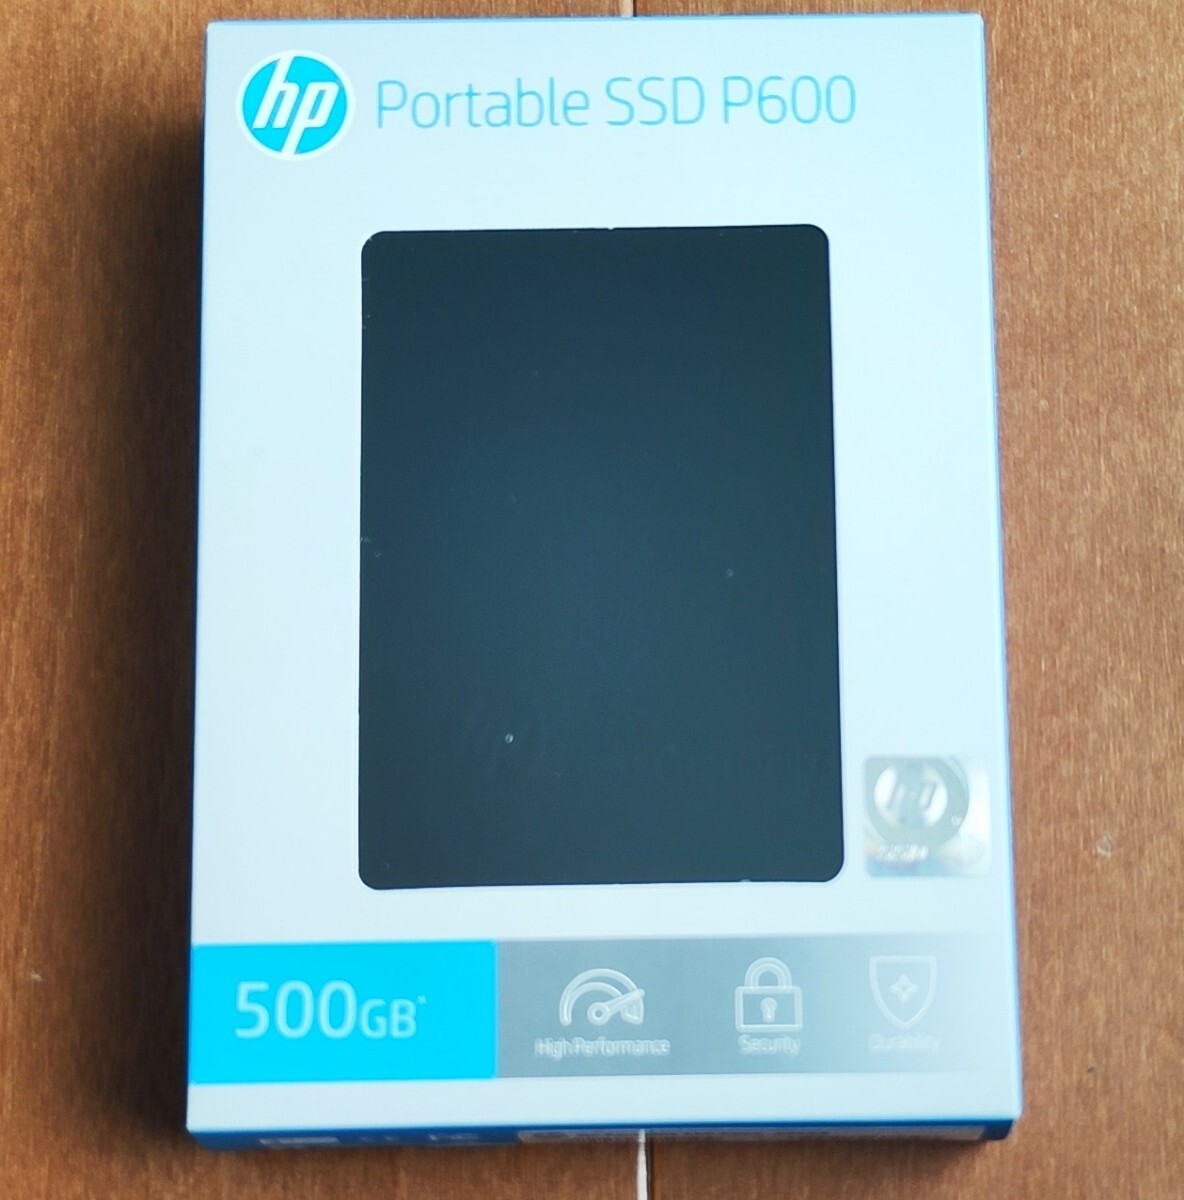 新品未開封品 500GB ポータブルSSD HP P600 USB Type-C 変換アダプタ付き